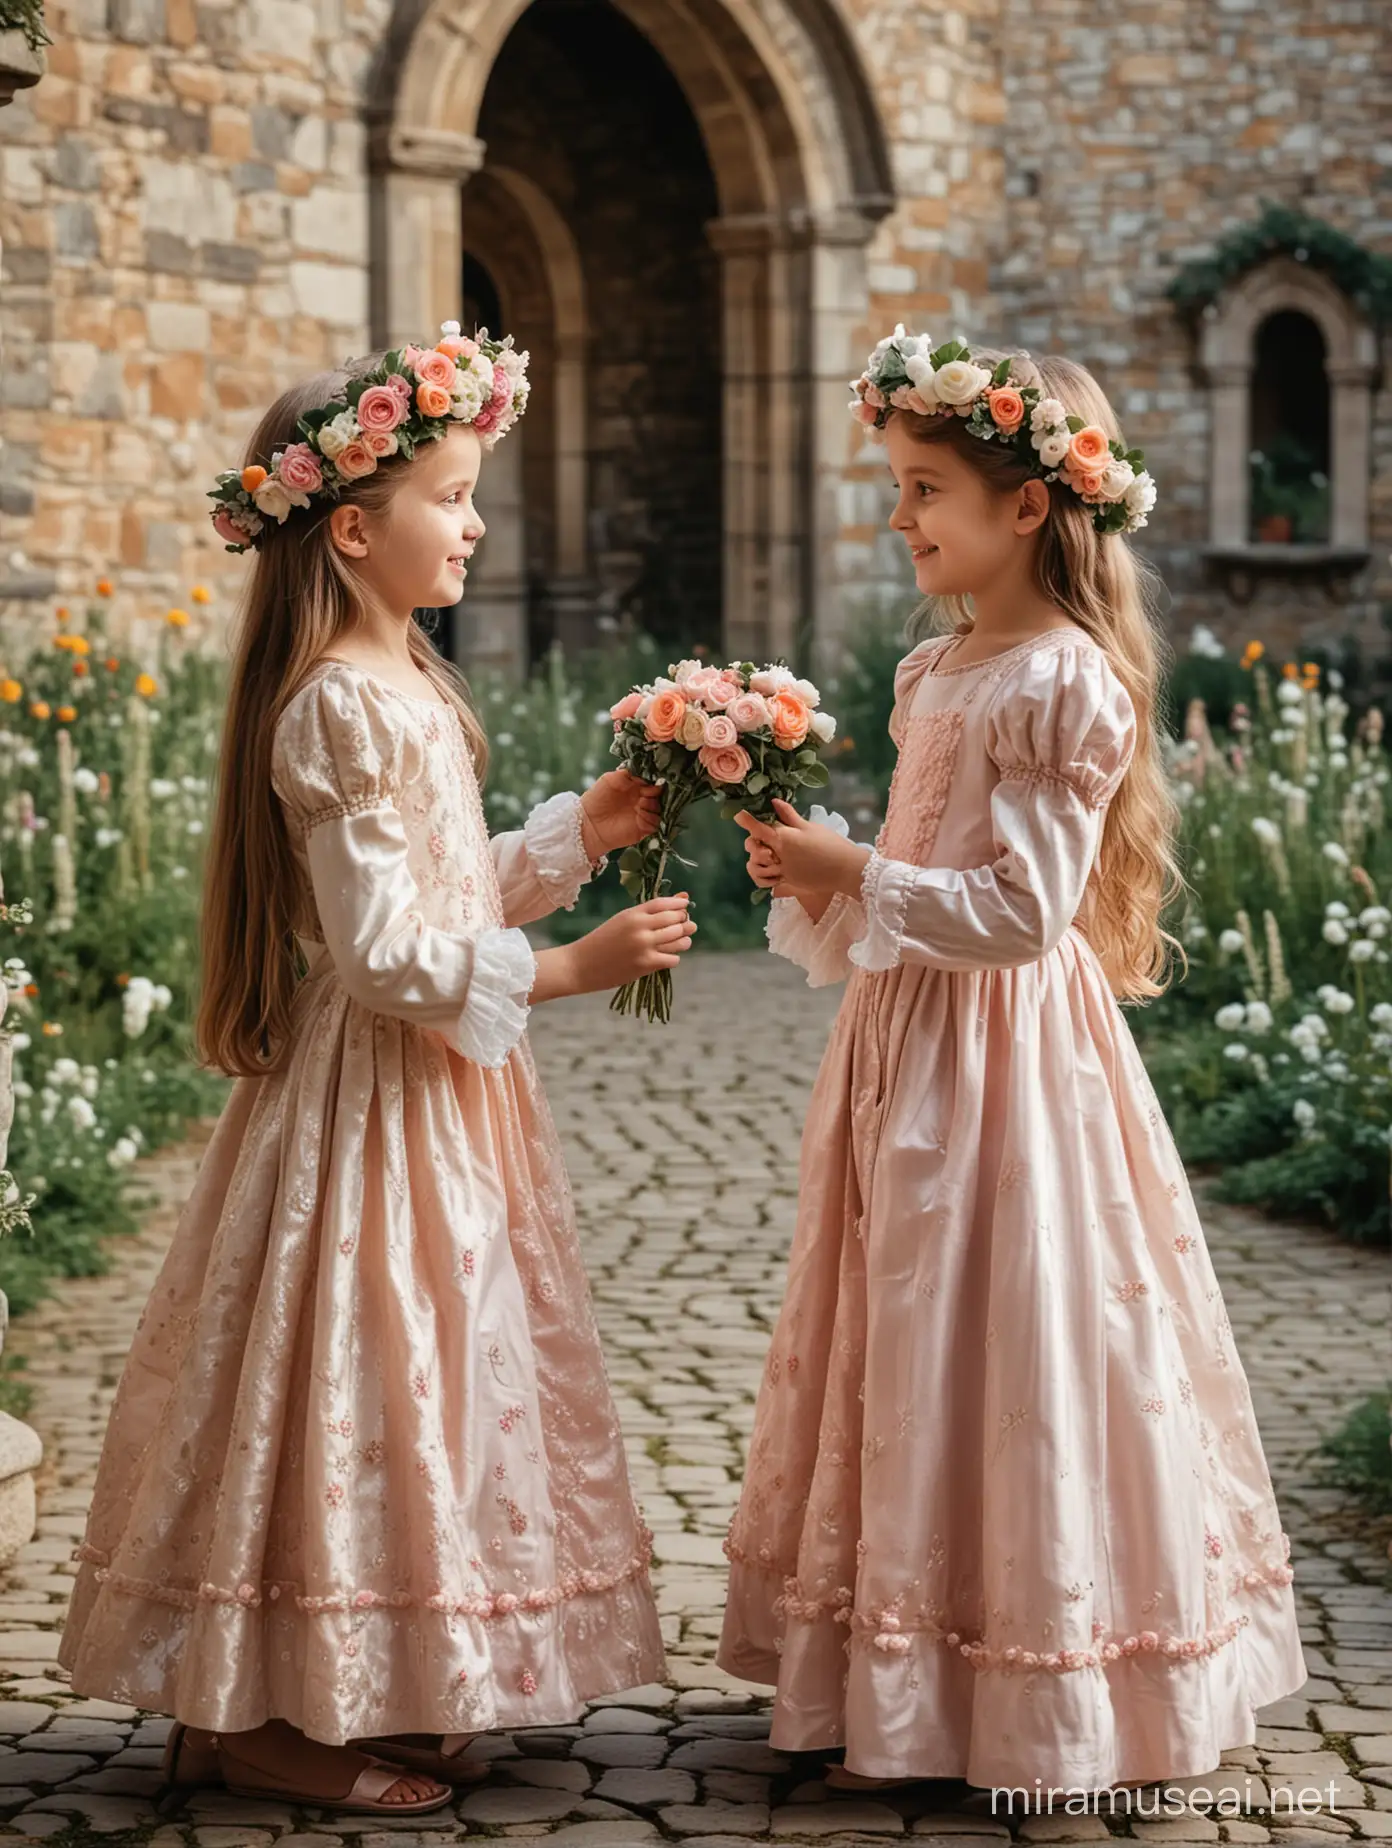 Две девочки, семь лет, одеты в пышные платья, венки из цветов на голове, стоят на фоне сказочного замка, смотрят друг на друга, держат в руке маленького цветочного человечка